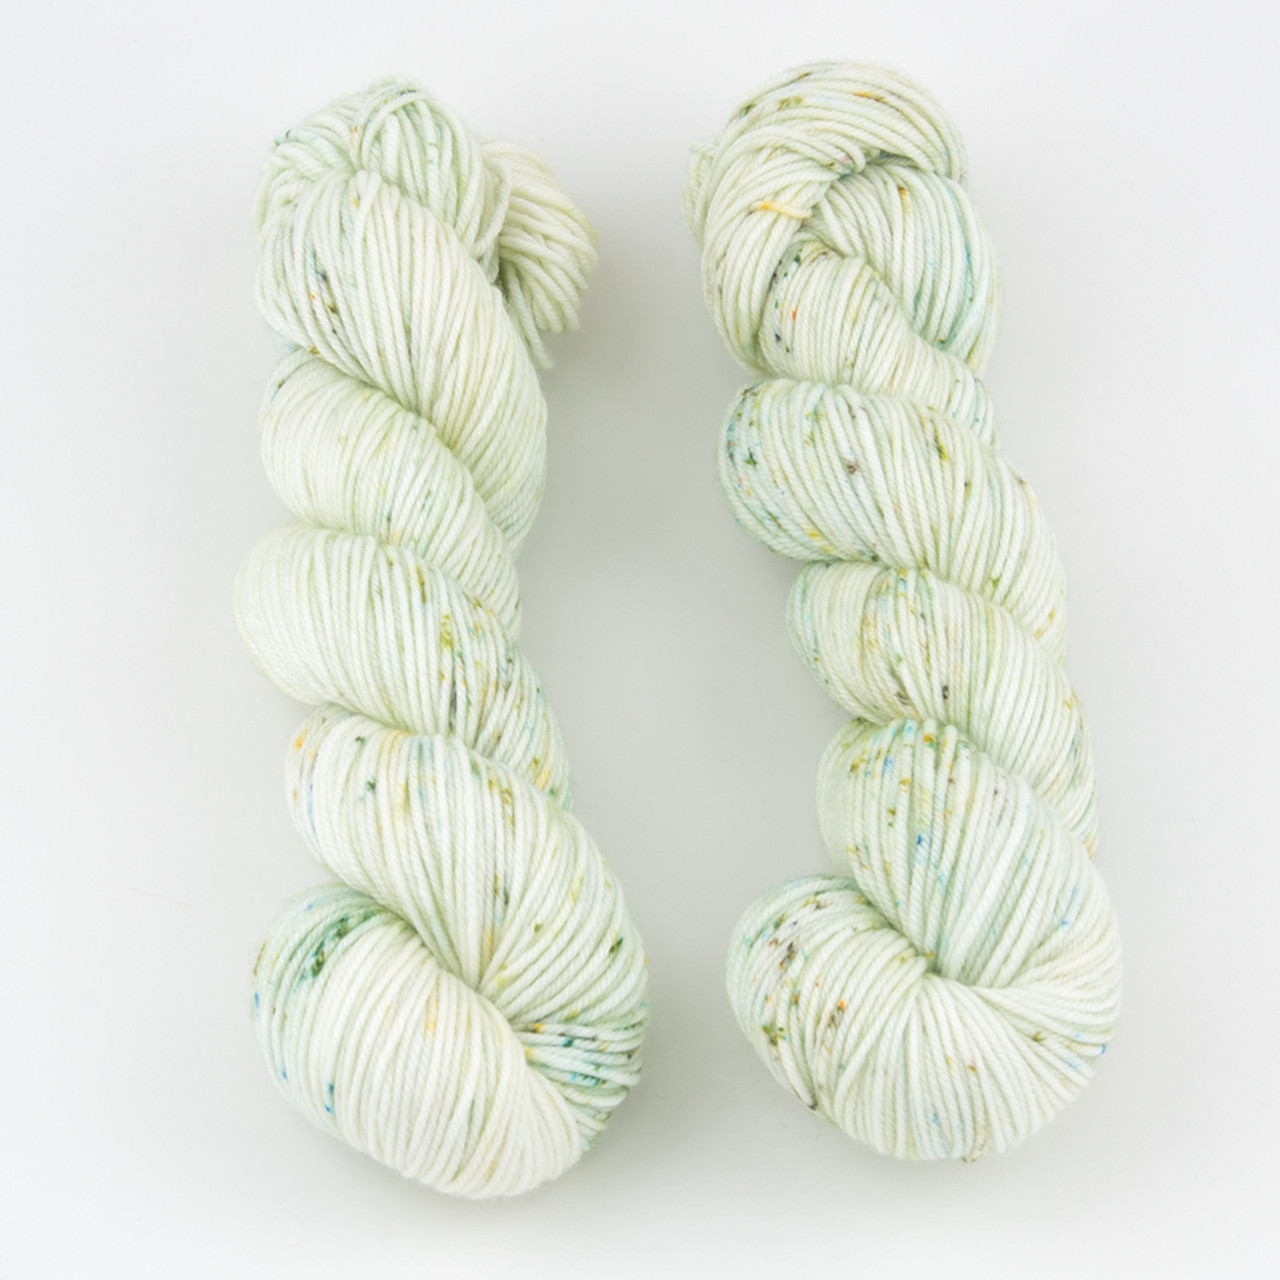 Siesta DK: Superwash Merino Wool Cashmere Nylon Yarn